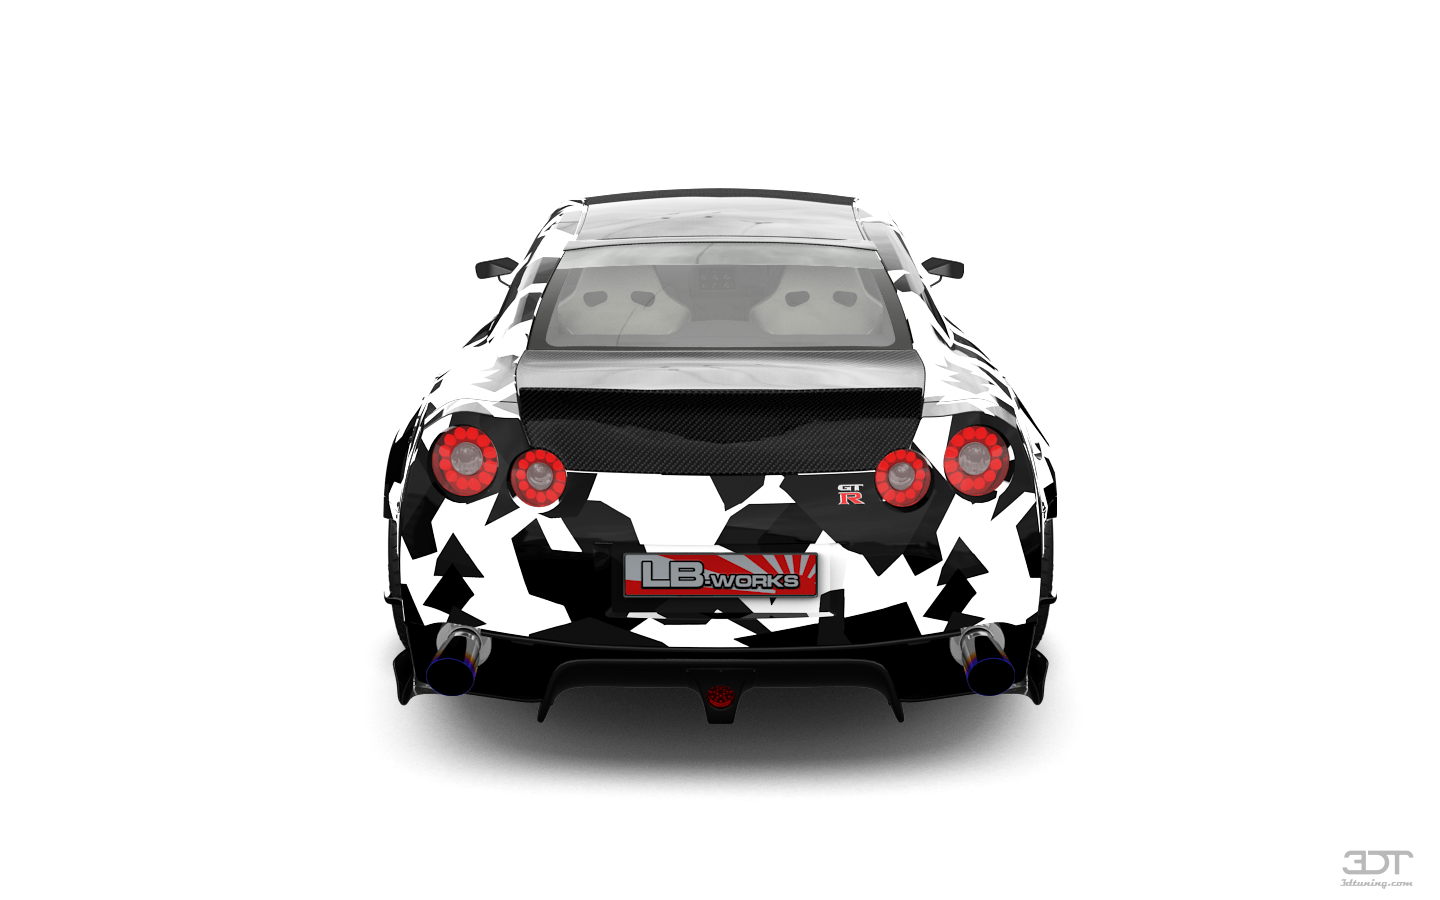 Nissan GT-R 2 Door Coupe 2010 tuning